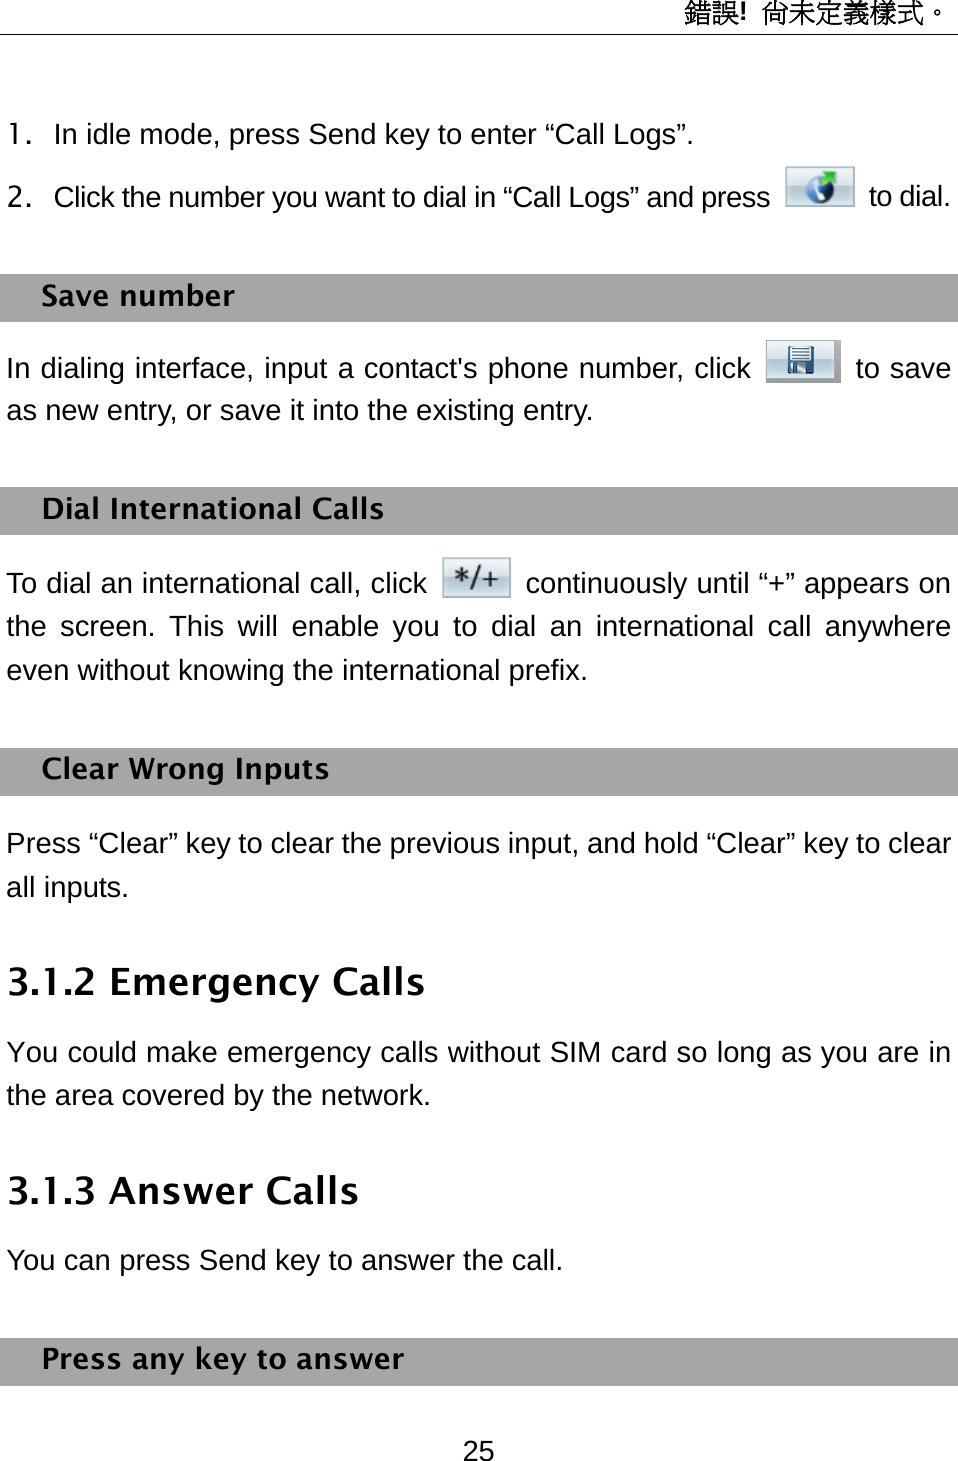 錯誤!  尚未定義樣式。 25 1.  In idle mode, press Send key to enter “Call Logs”. 2.  Click the number you want to dial in “Call Logs” and press   to dial.  Save number In dialing interface, input a contact&apos;s phone number, click   to save as new entry, or save it into the existing entry. Dial International Calls To dial an international call, click    continuously until “+” appears on the screen. This will enable you to dial an international call anywhere even without knowing the international prefix.   Clear Wrong Inputs Press “Clear” key to clear the previous input, and hold “Clear” key to clear all inputs. 3.1.2 Emergency Calls You could make emergency calls without SIM card so long as you are in the area covered by the network.   3.1.3 Answer Calls You can press Send key to answer the call. Press any key to answer 